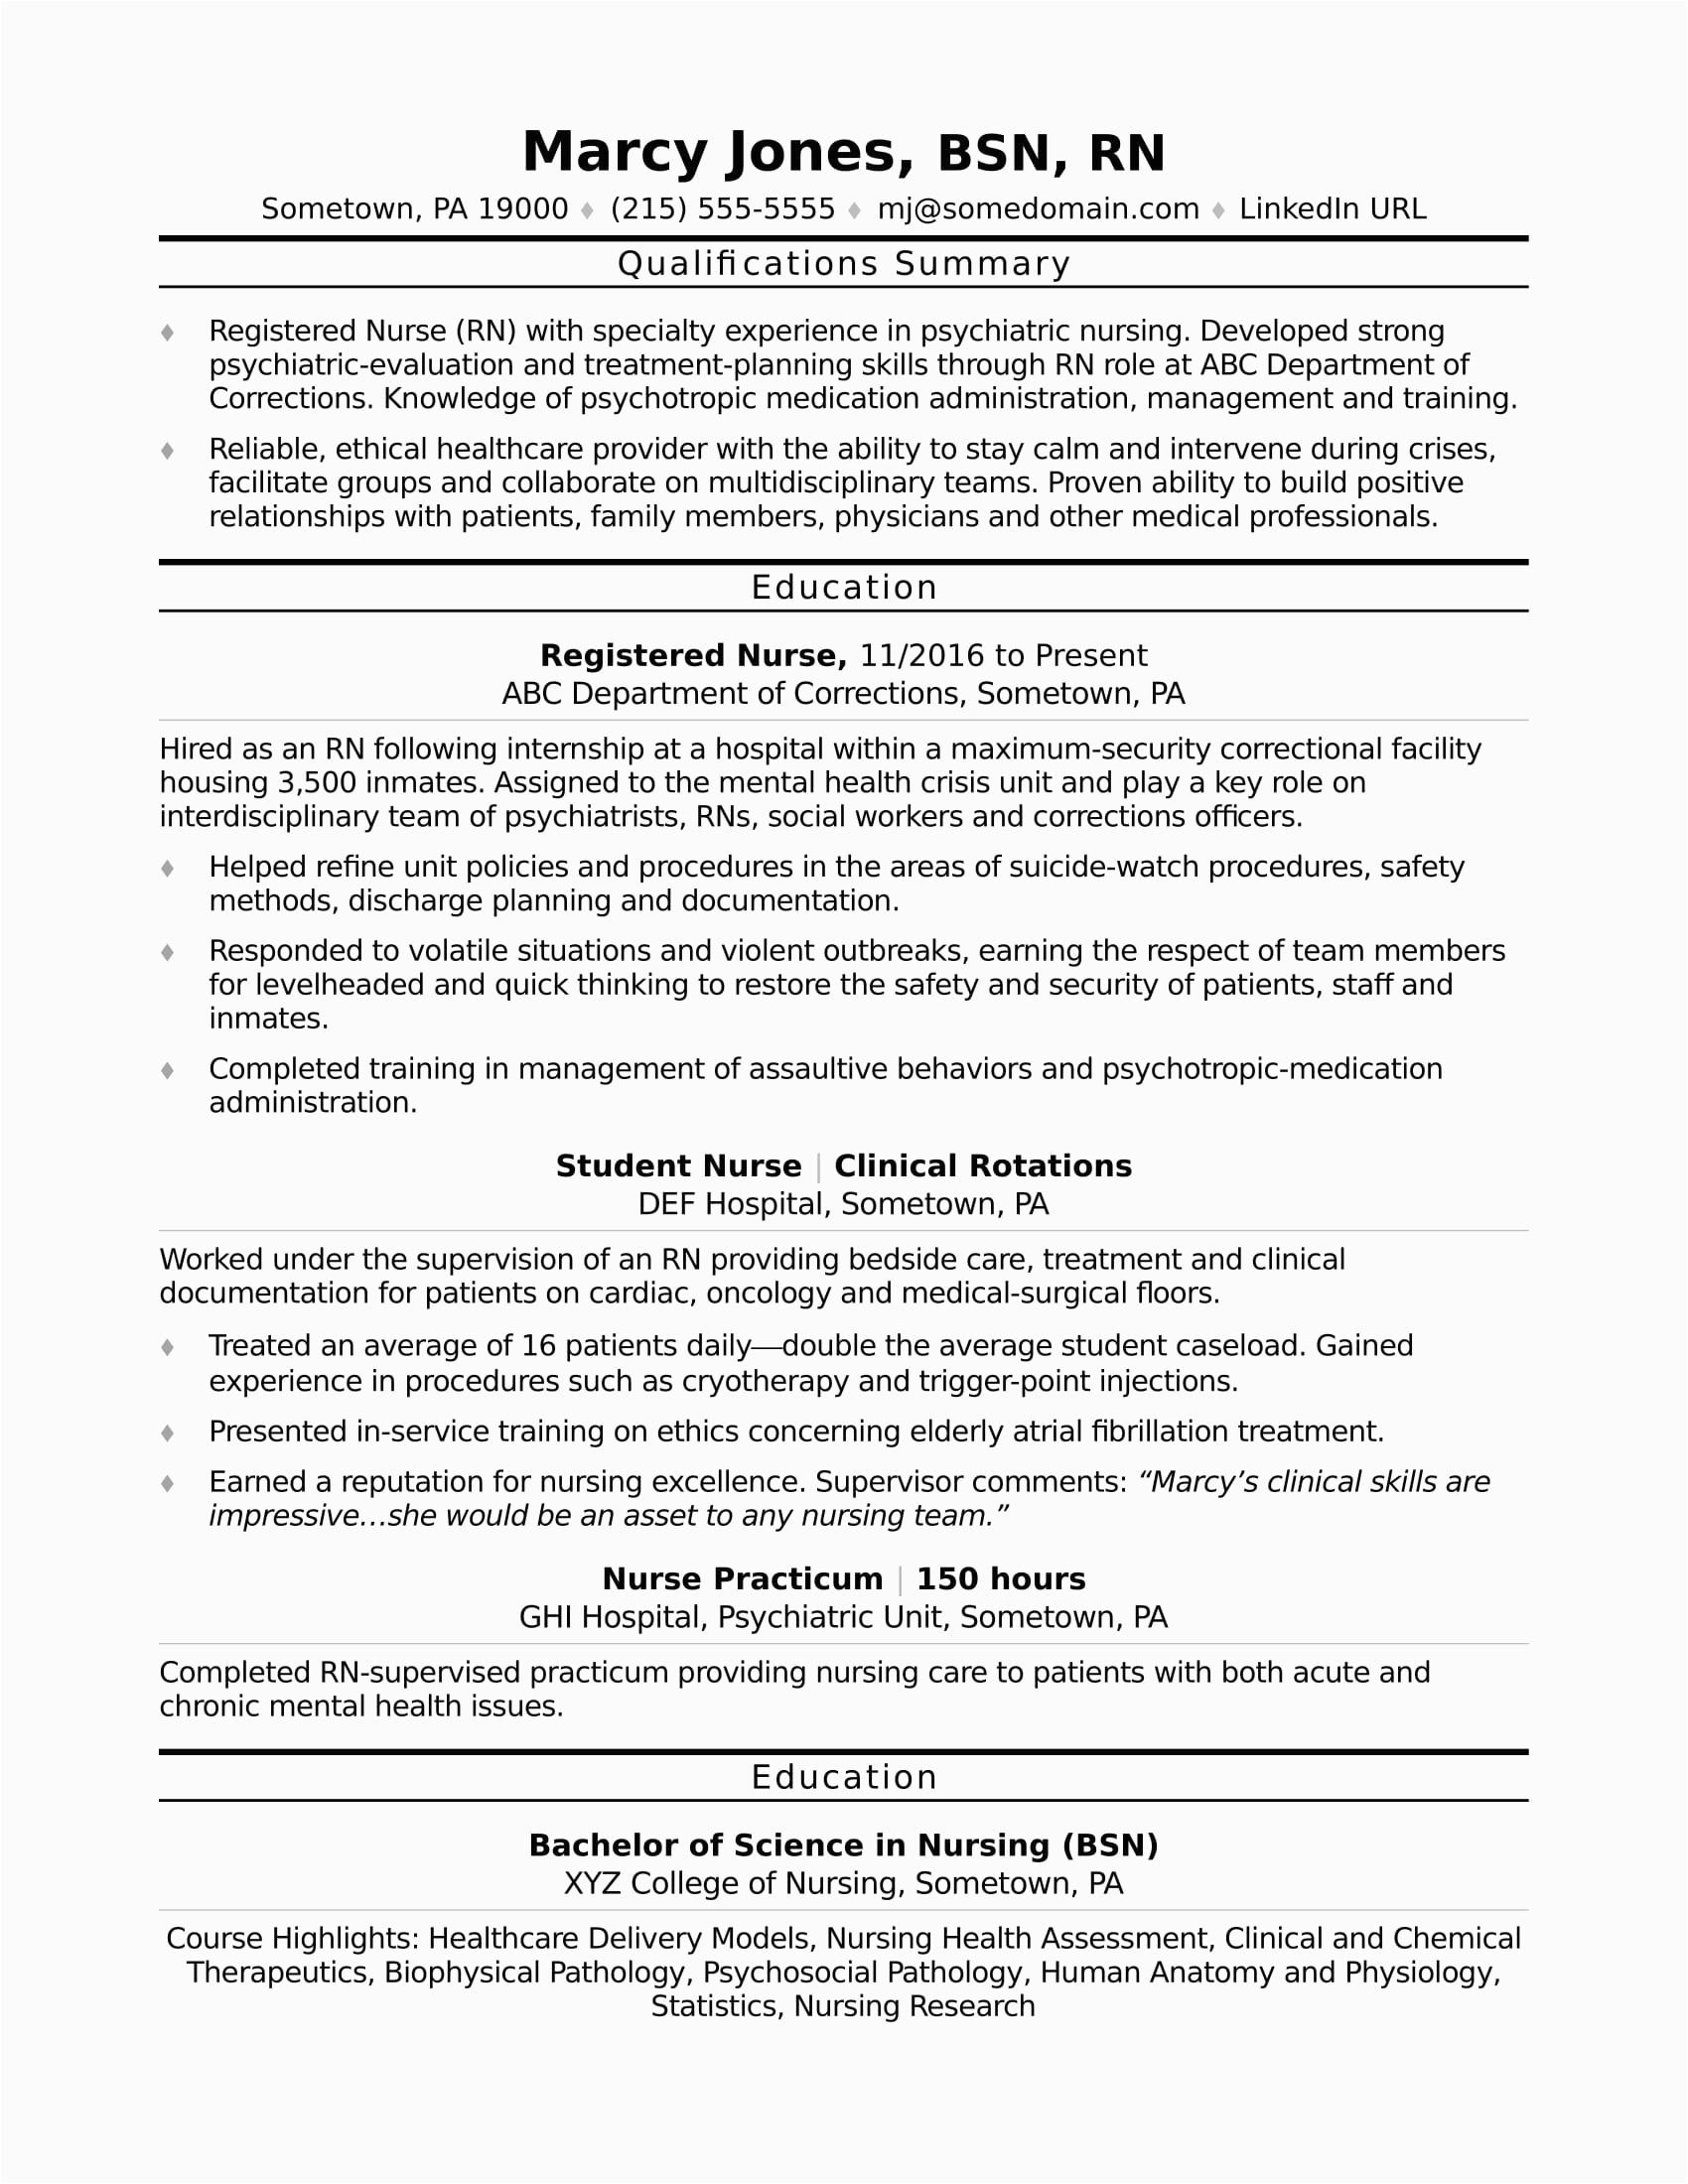 Sample Professional Summary On Resume for Nurse Registered Nurse Rn Resume Sample